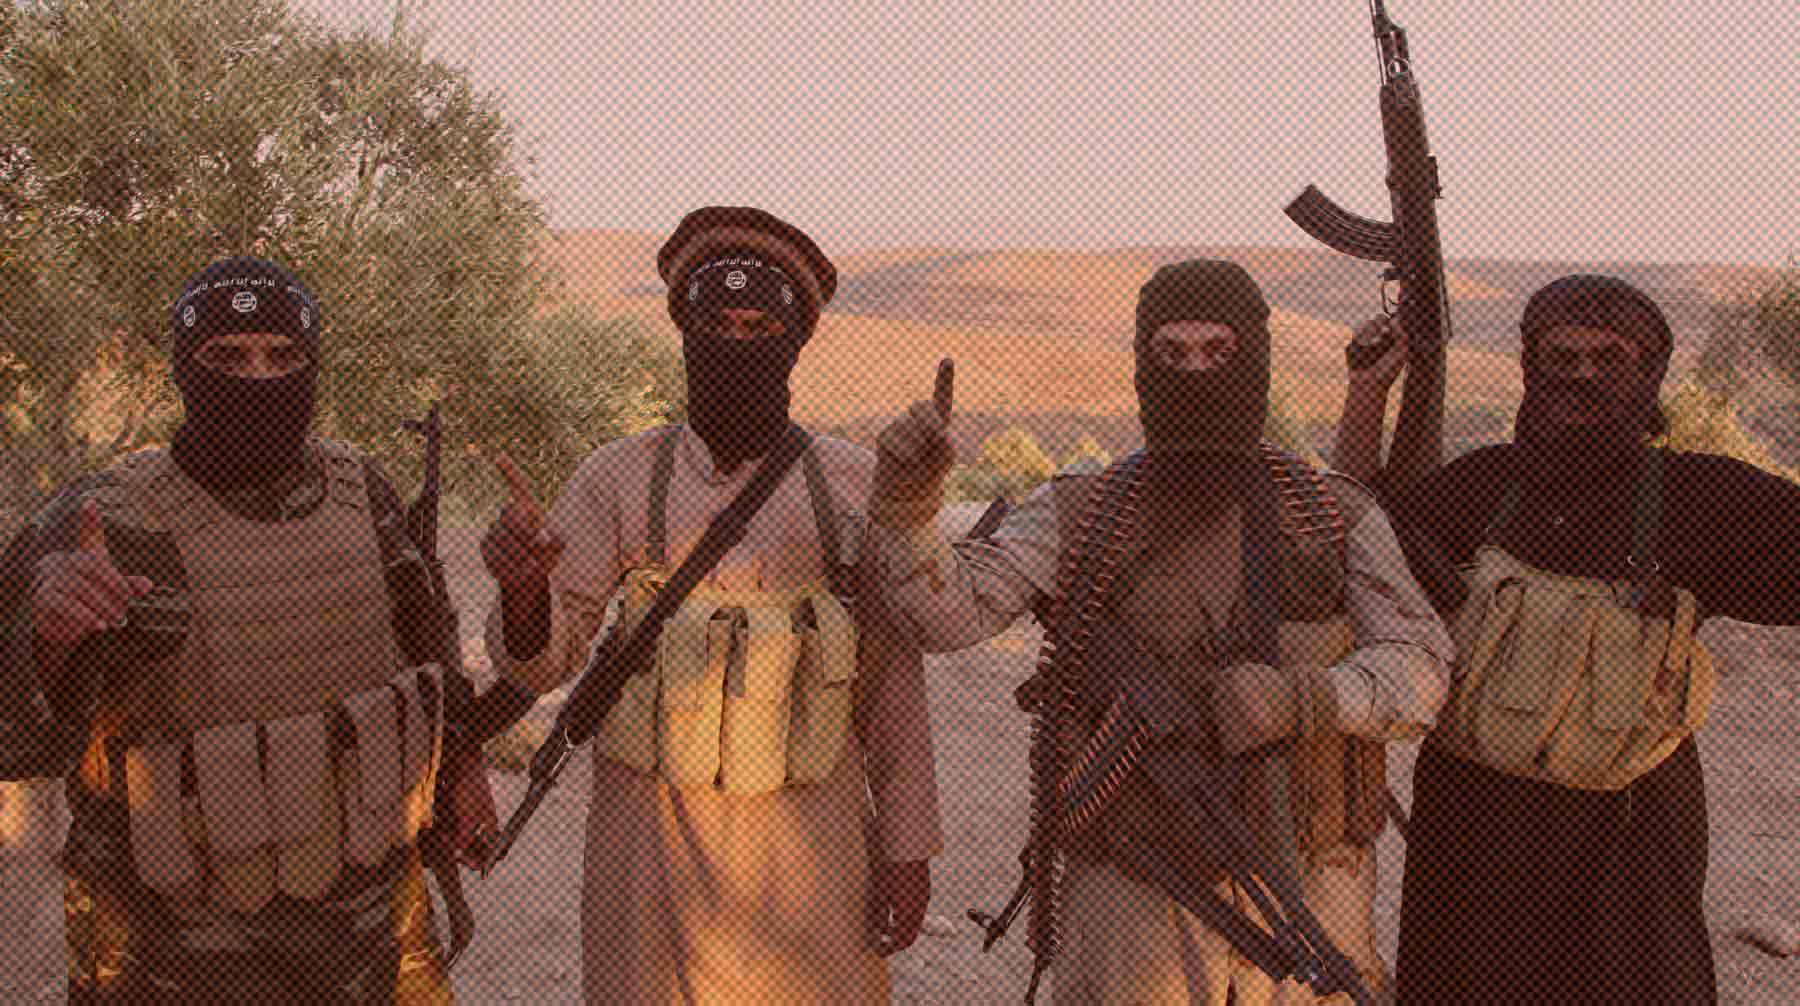 Американские военные ведут вербовку боевиков-джихадистов, которые будут устраивать теракты в РФ и СНГ, заявили в ведомстве Фото: Global Look Press / Medyan Dairieh